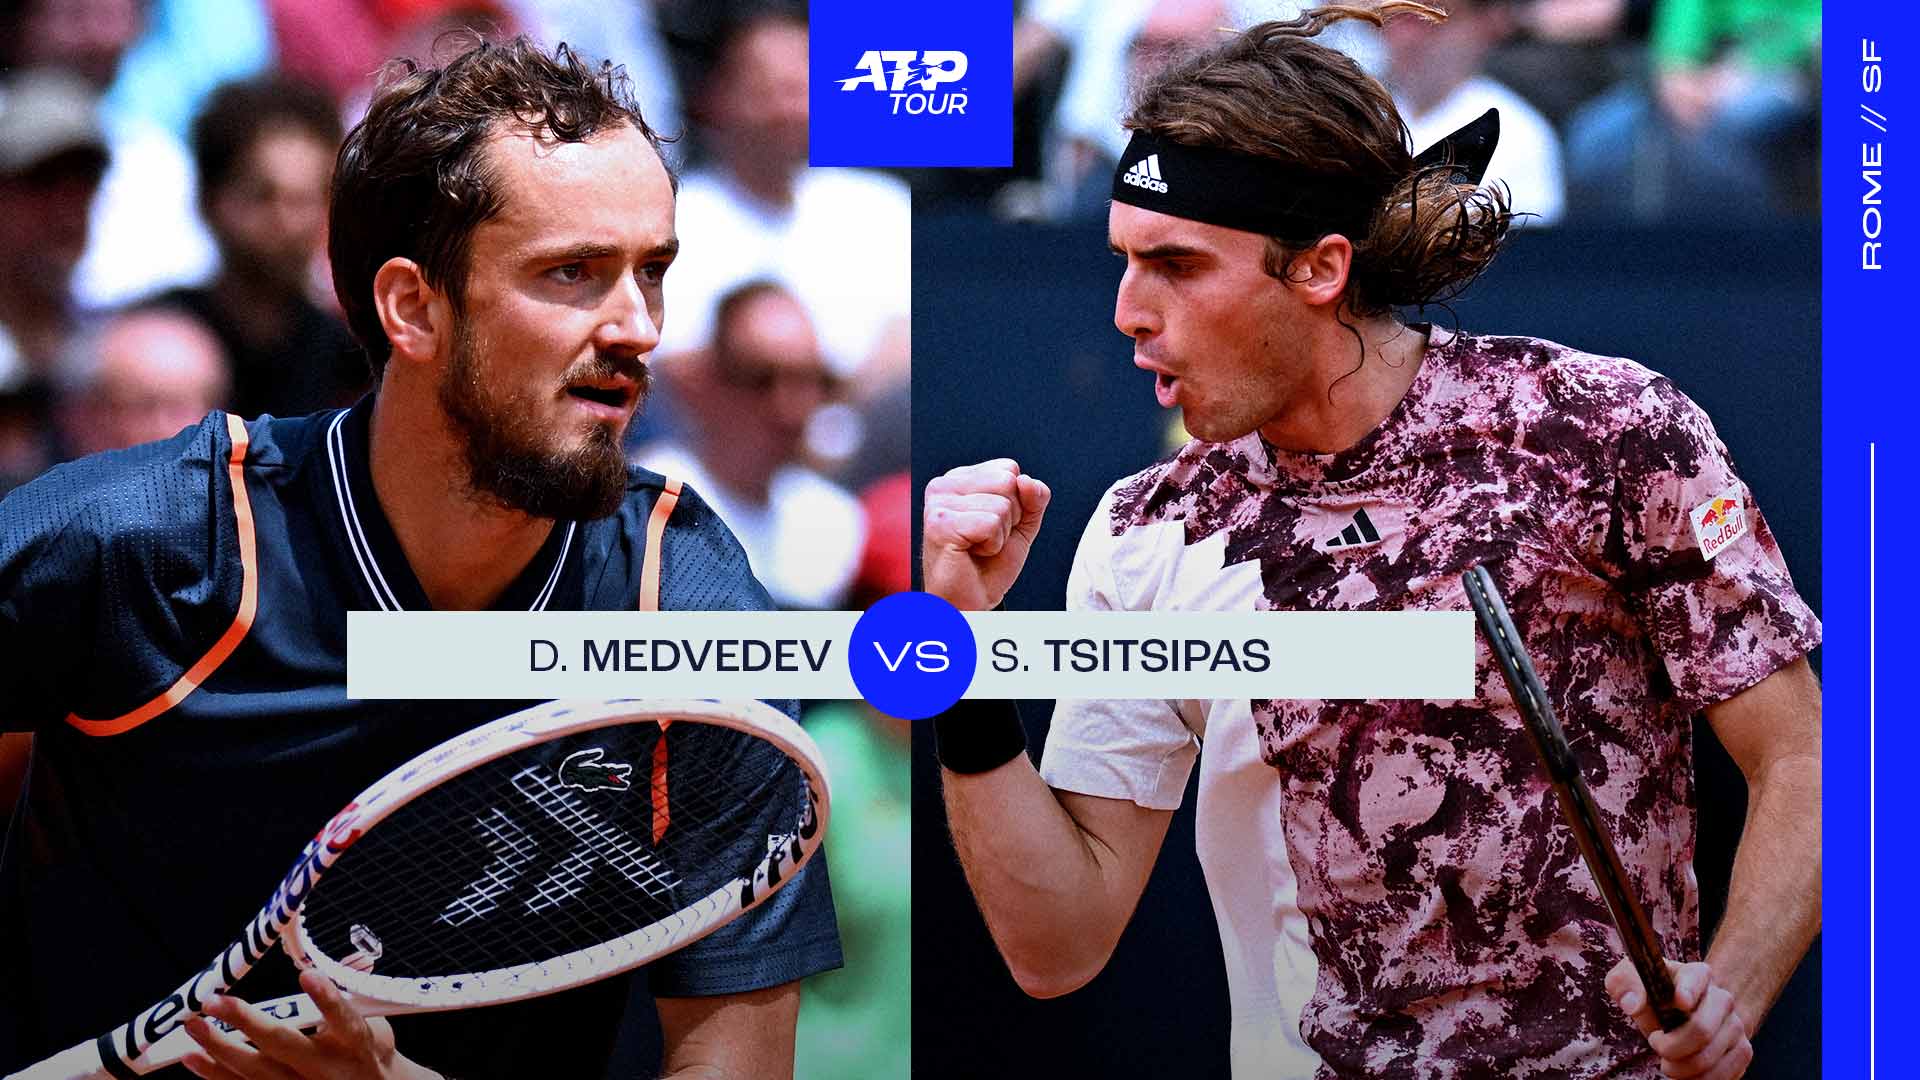 Daniil Medvedev leads Stefanos Tsitsipas 7-4 in their ATP Head2Head series.